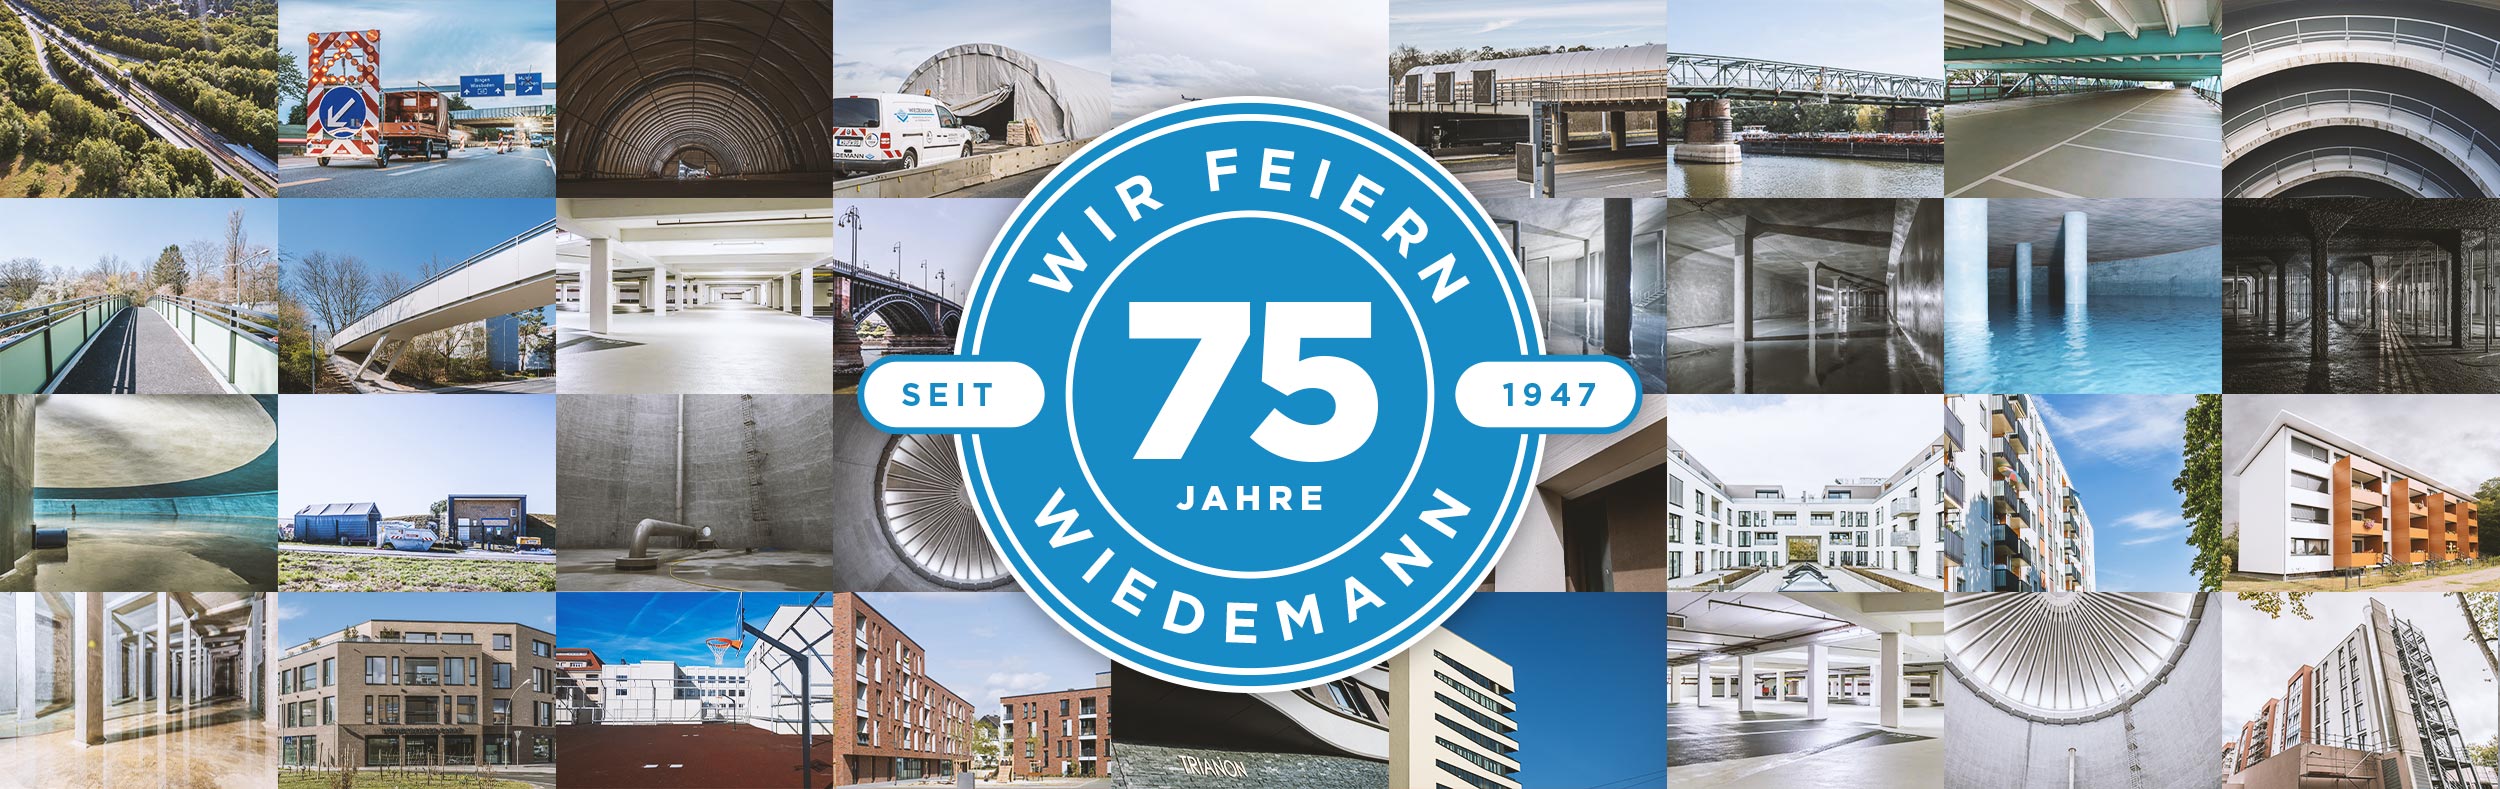 Profilbild des Unternehmens Die Fritz Wiedemann & Sohn GmbH in Wiesbaden. Das Bild zeigt einige Projekte im Bereich Bauwerksinstandsetzung.